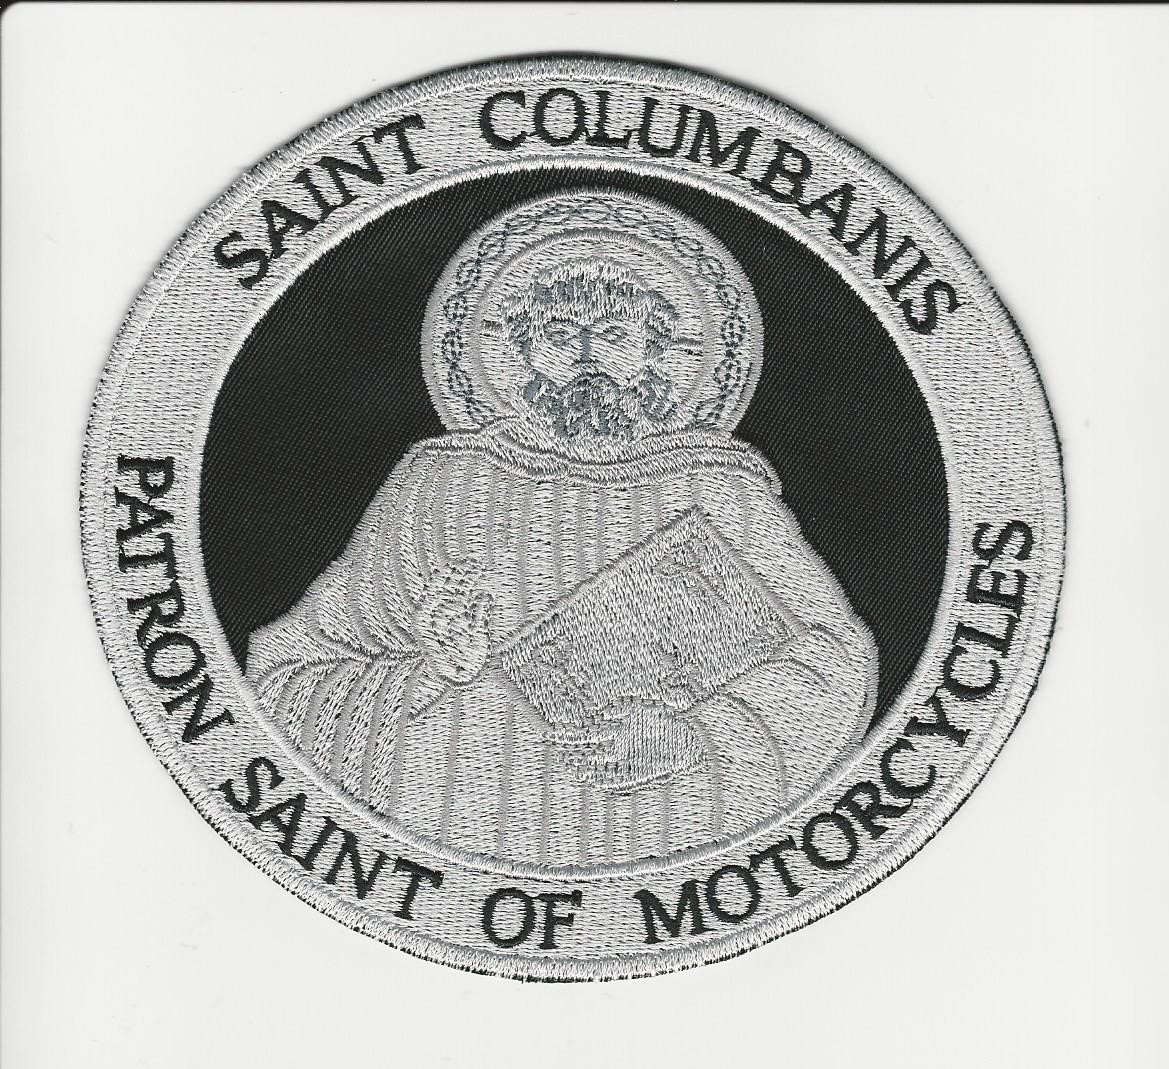 Saint Columbanis Patron Saint of Motorcycles 5' patch